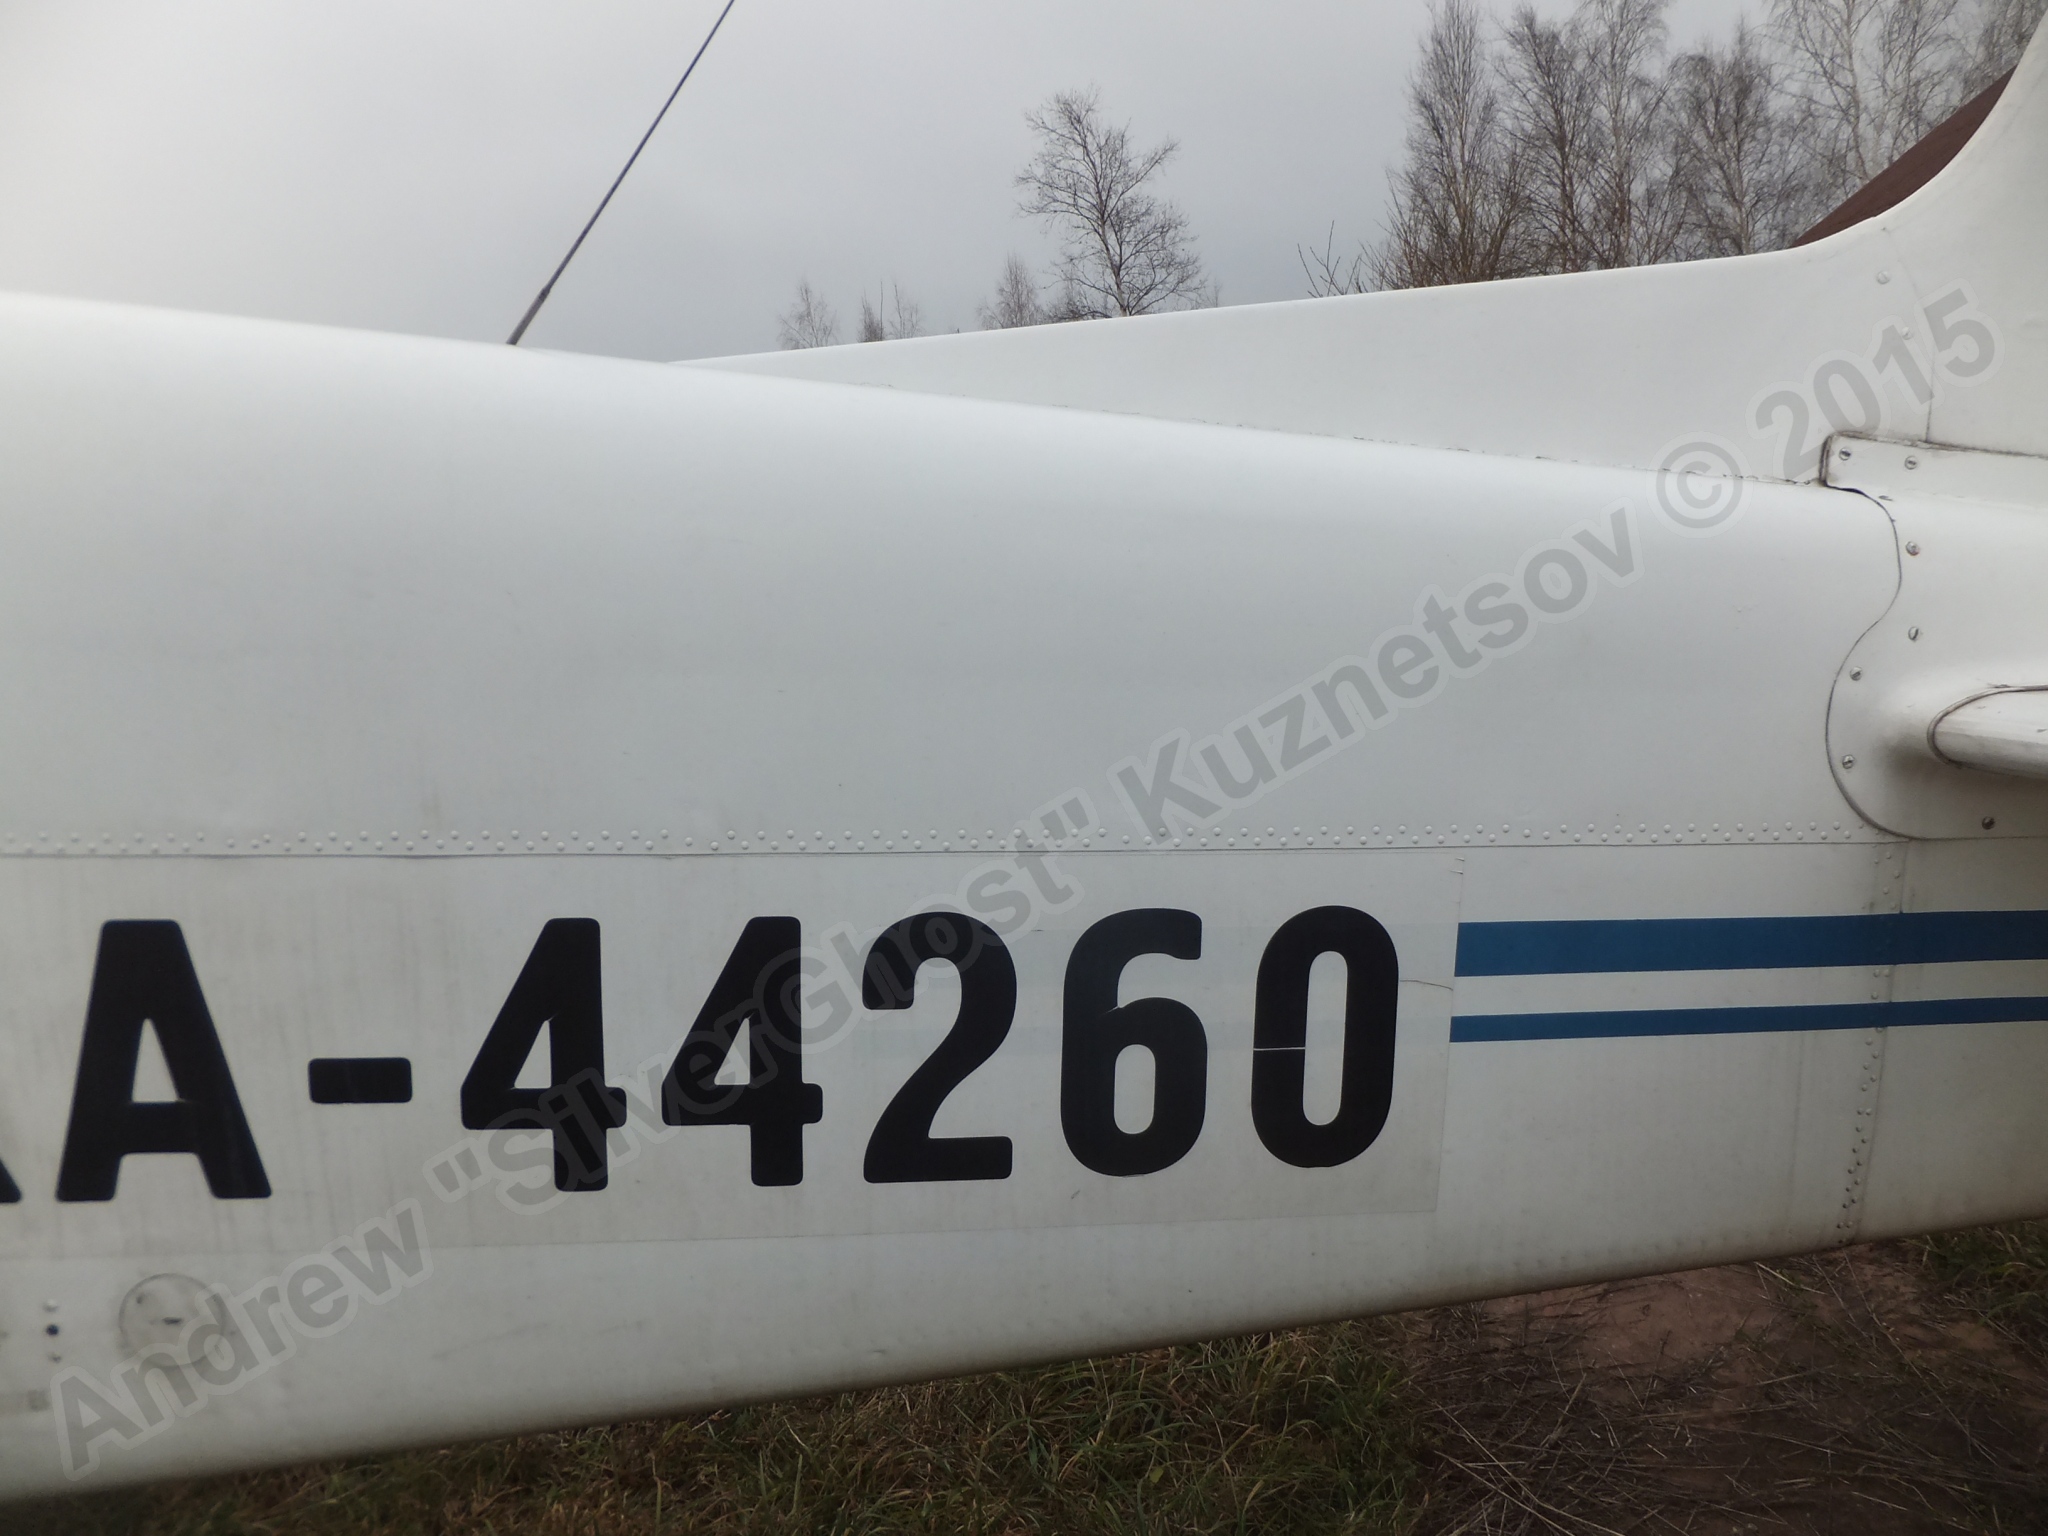 Yak-18T_RA-44260_0217.jpg